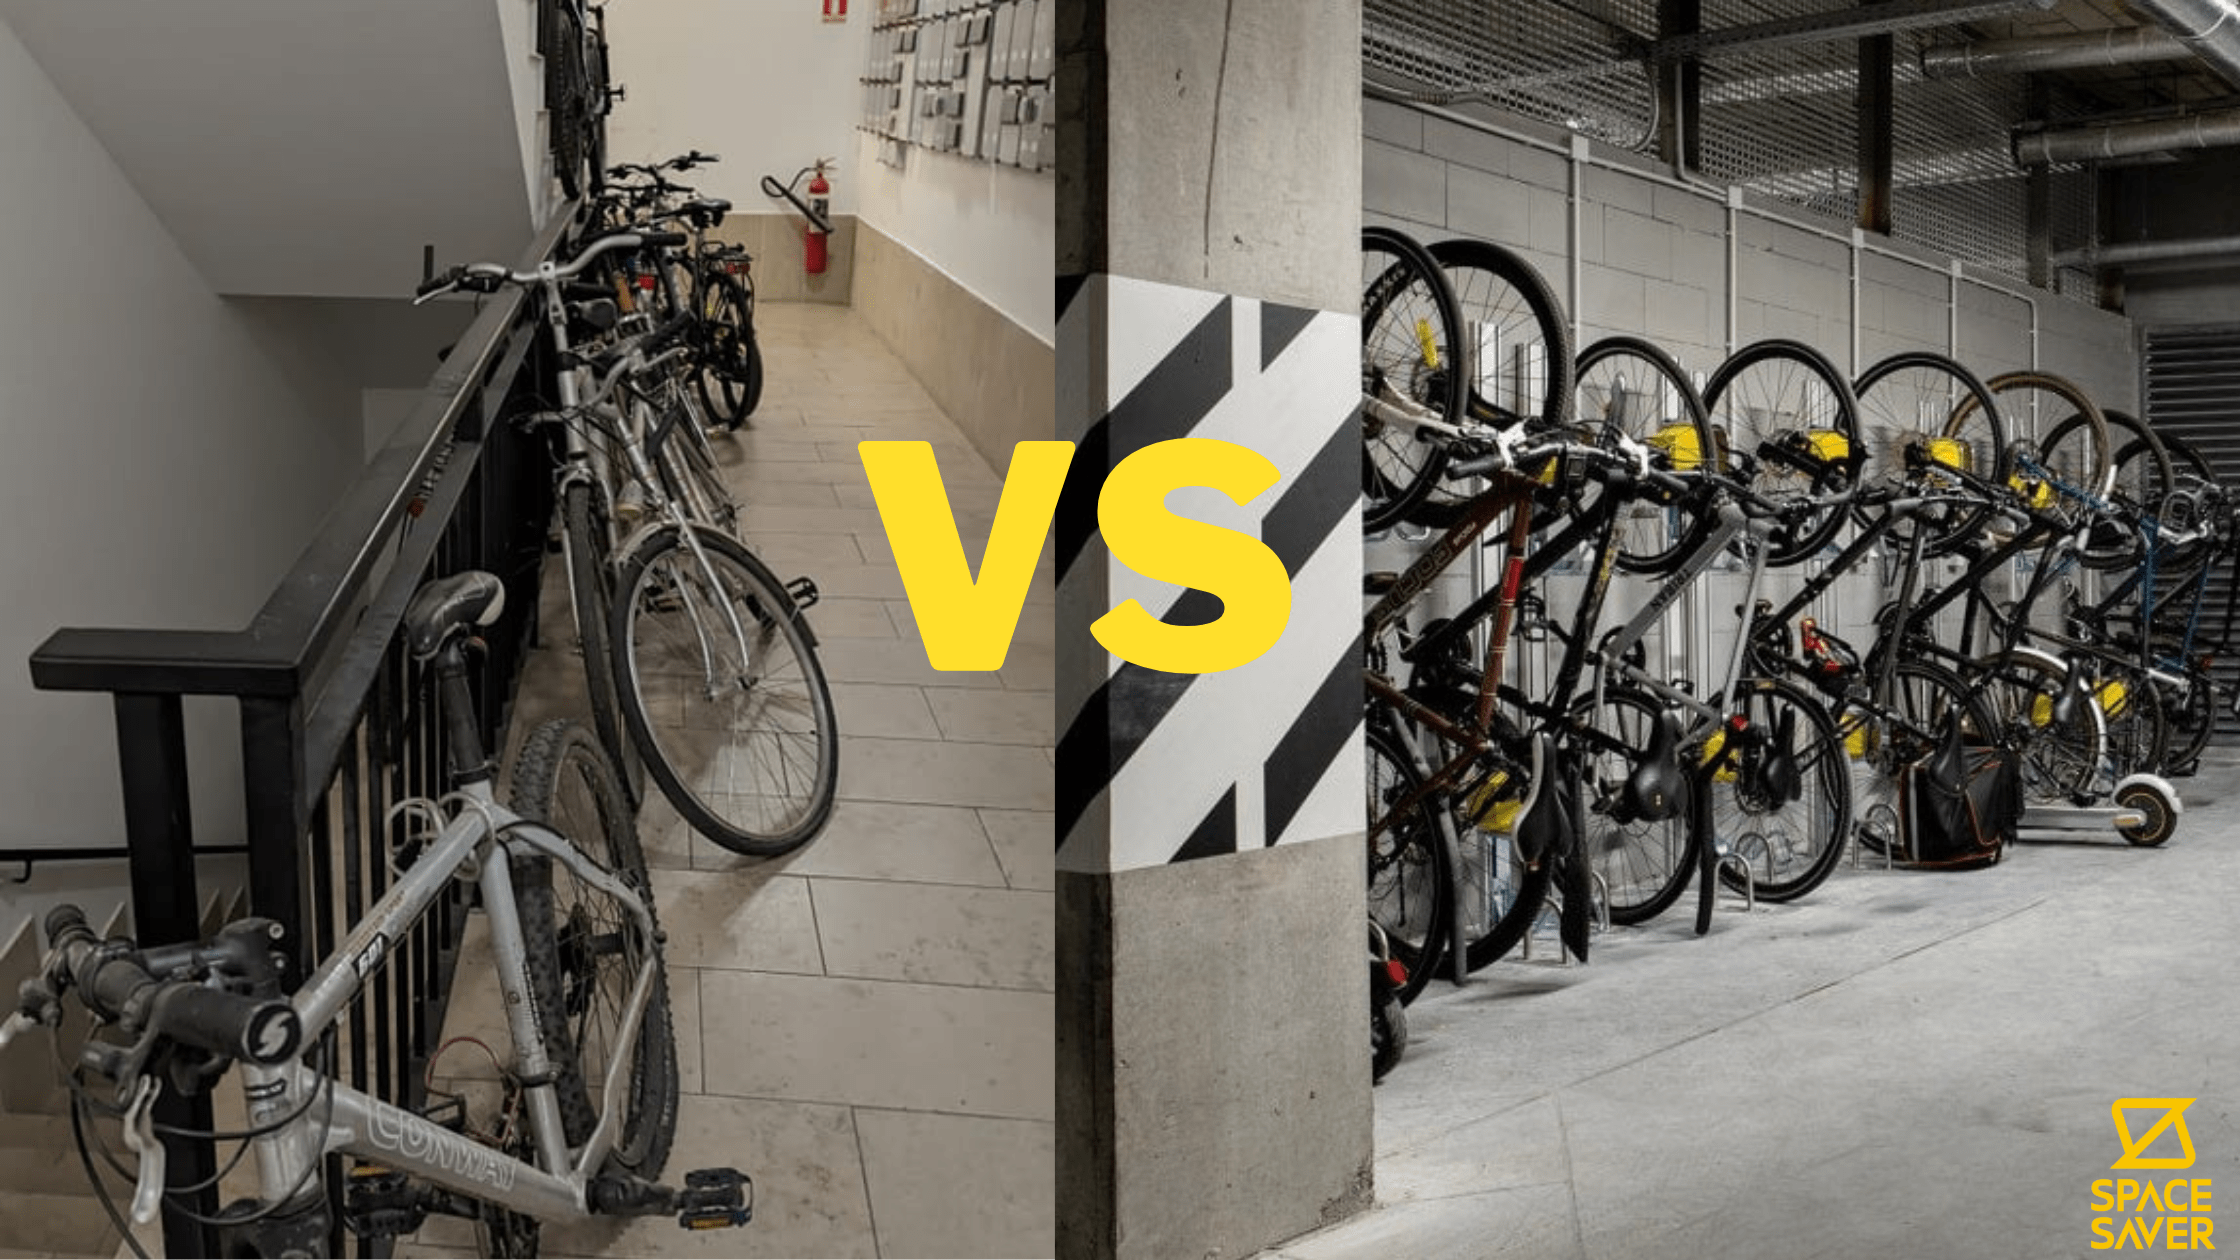 Blocul tau are o problemă cu parcarea bicicletelor ?